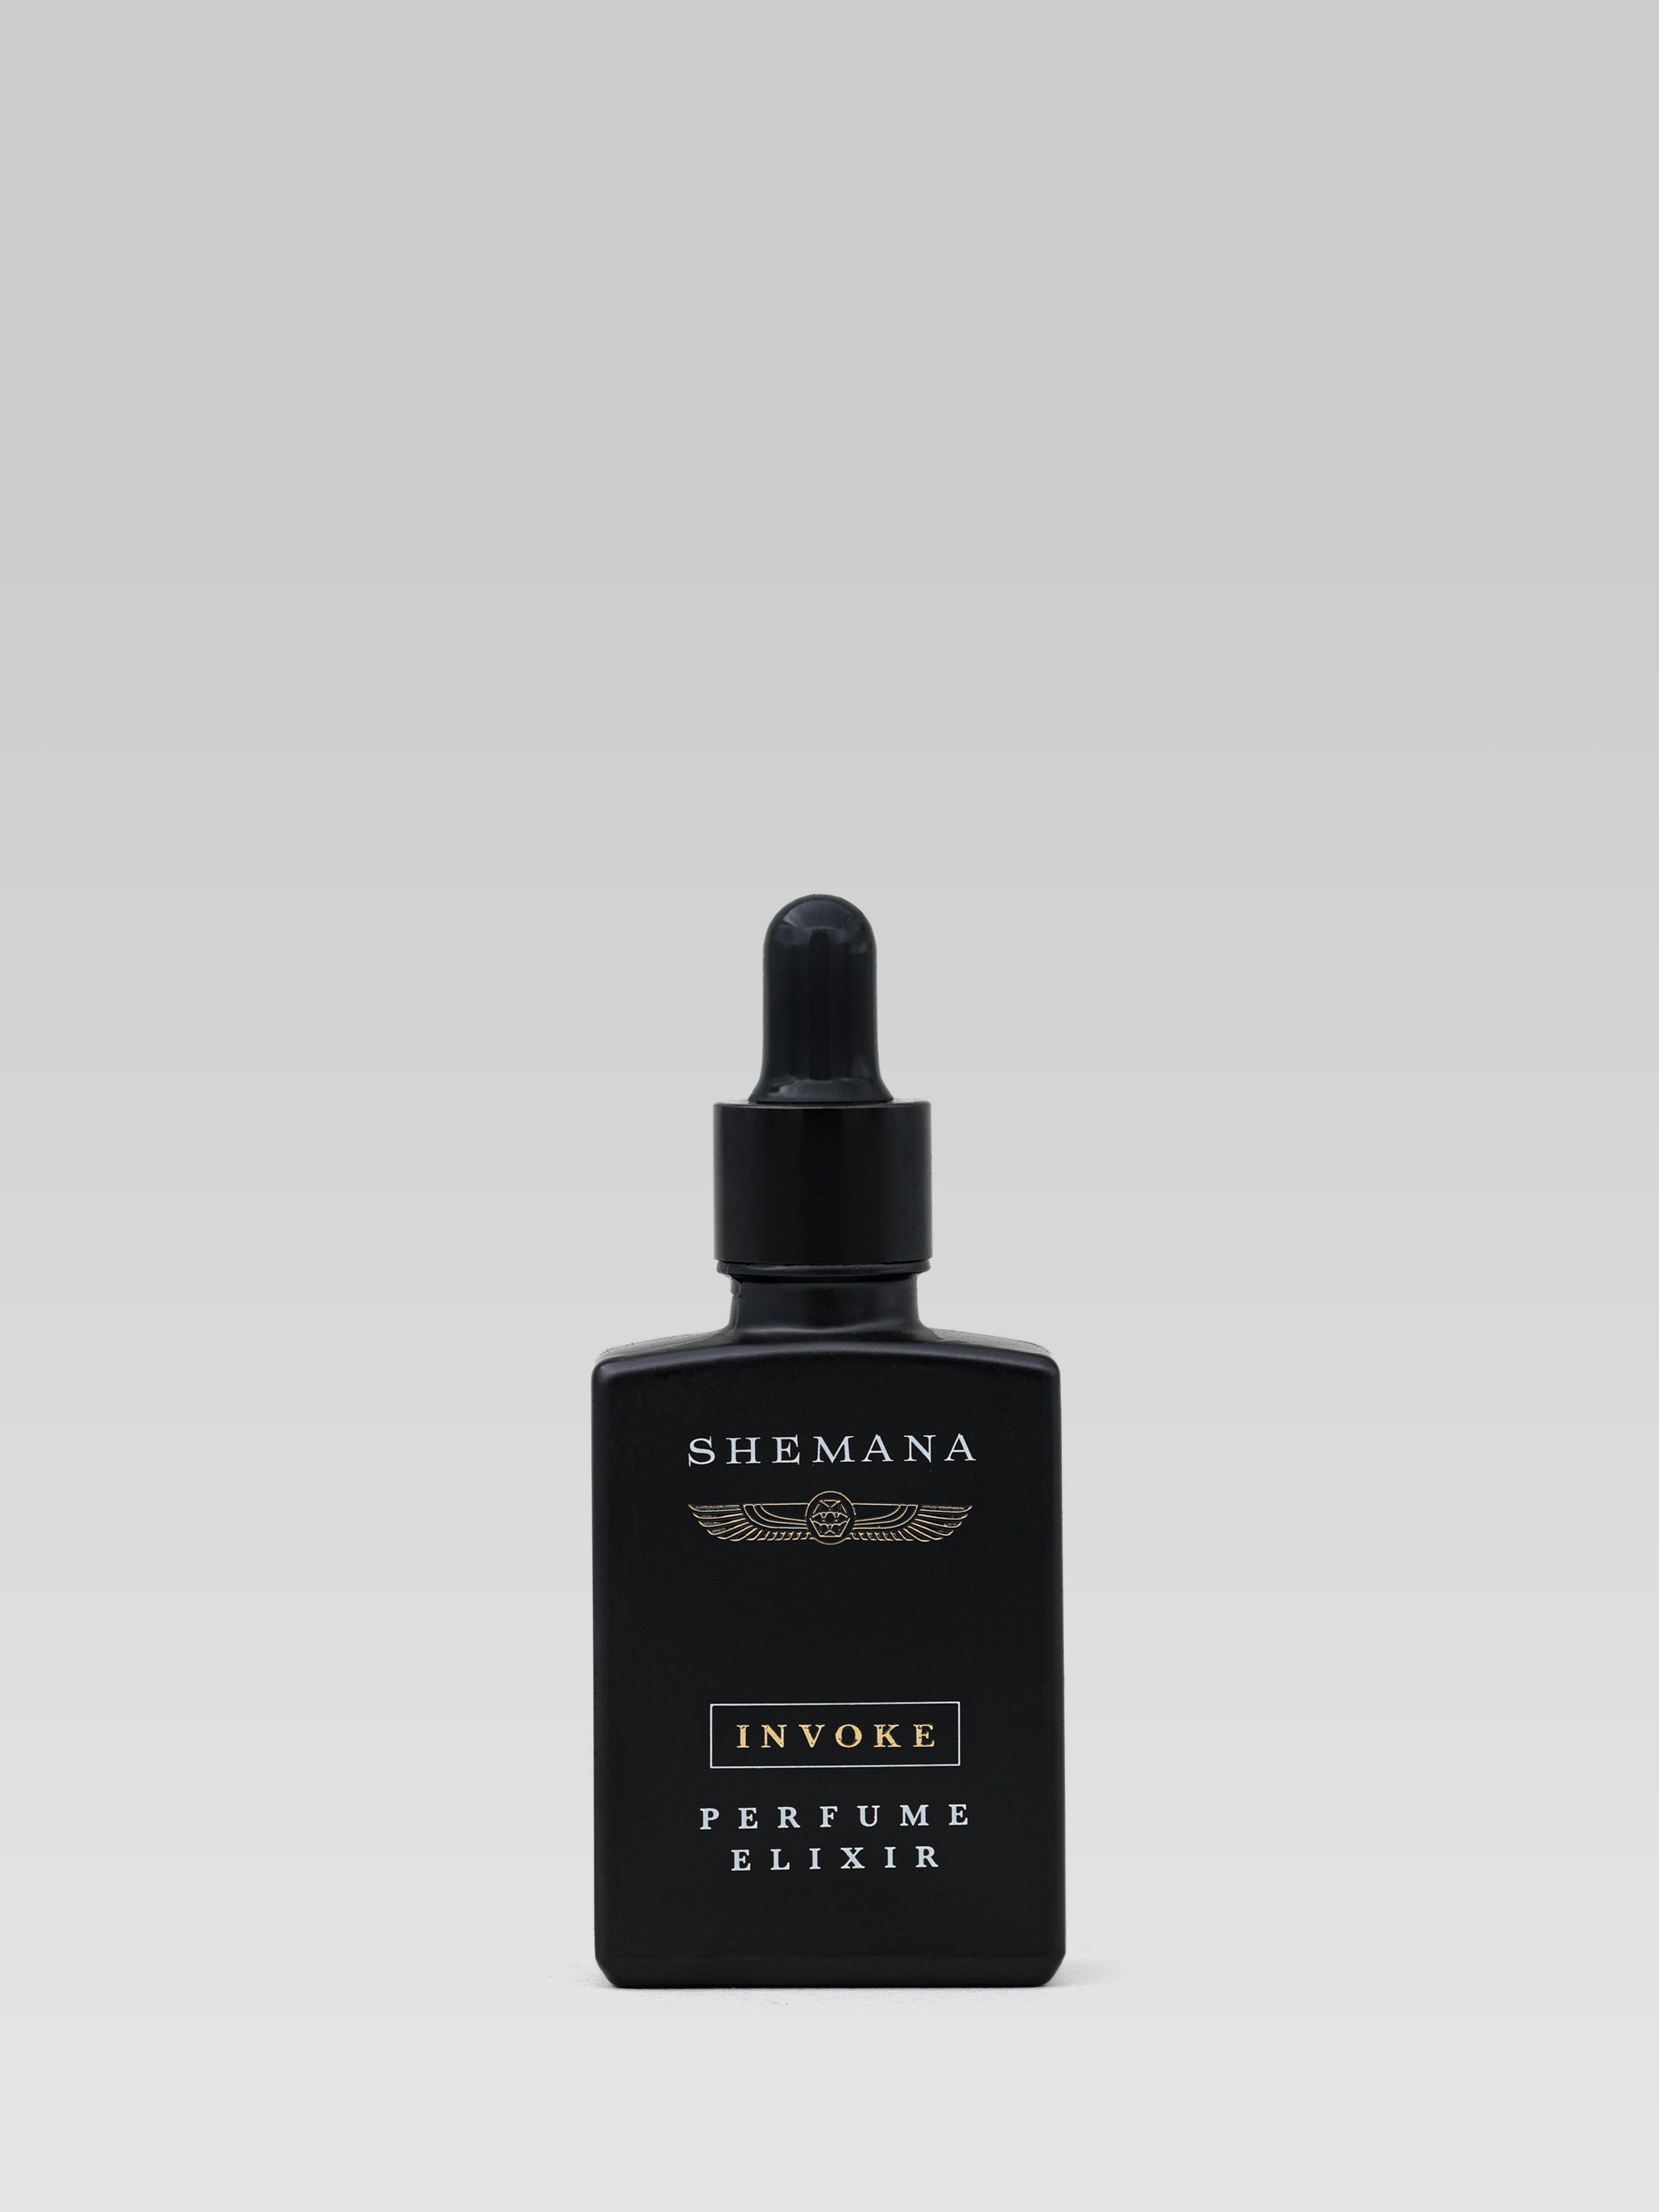 Shemana Invoke Perfume Elixir product shot 